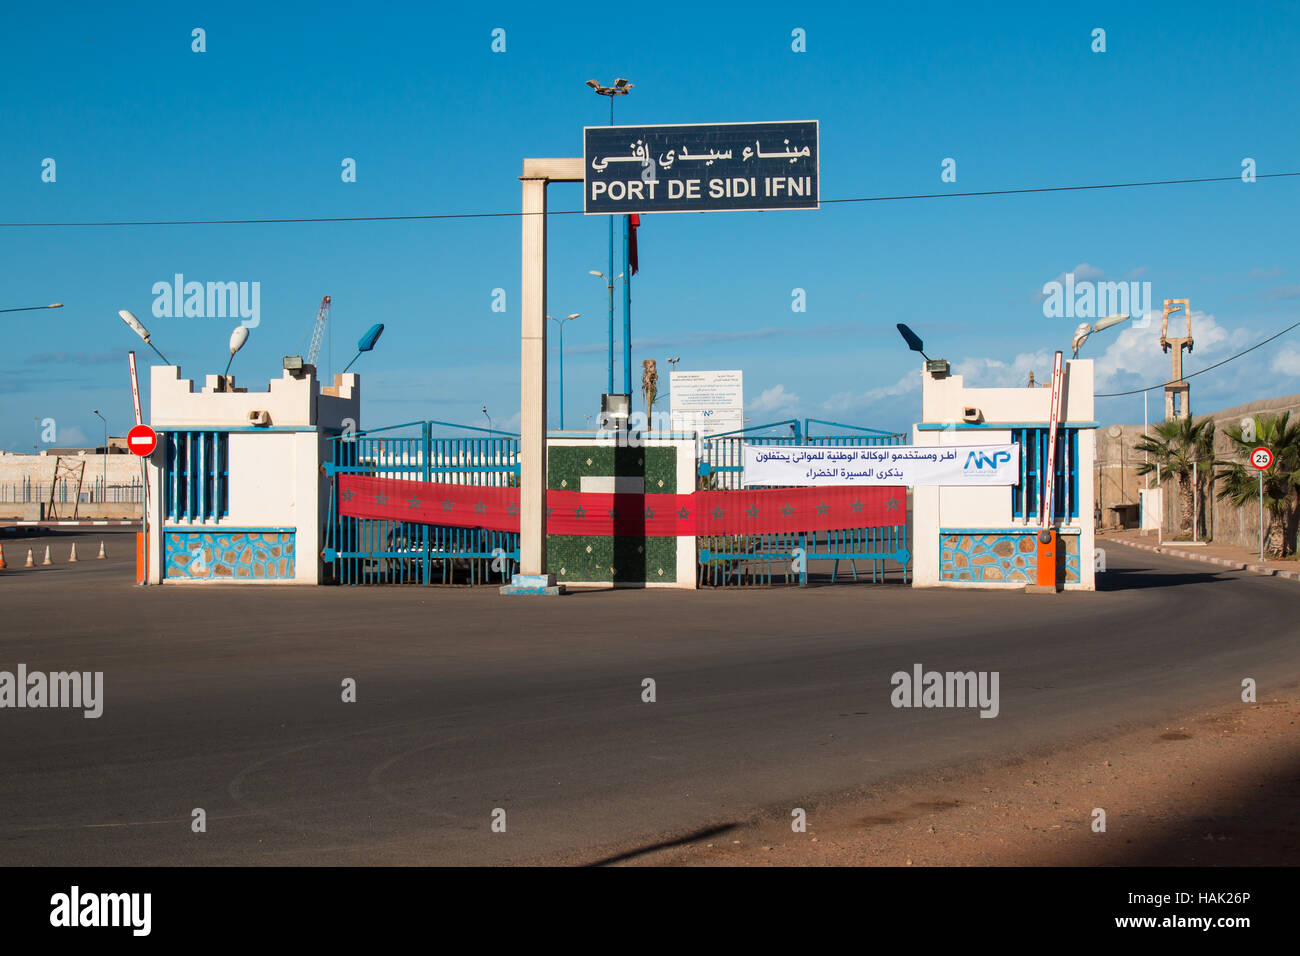 Entrée de la zone d'un port en ville Sidi Ifni à la côte de l'océan Atlantique au Maroc. Clôture avec drapeau marocain. Ciel bleu avec des nuages. Banque D'Images